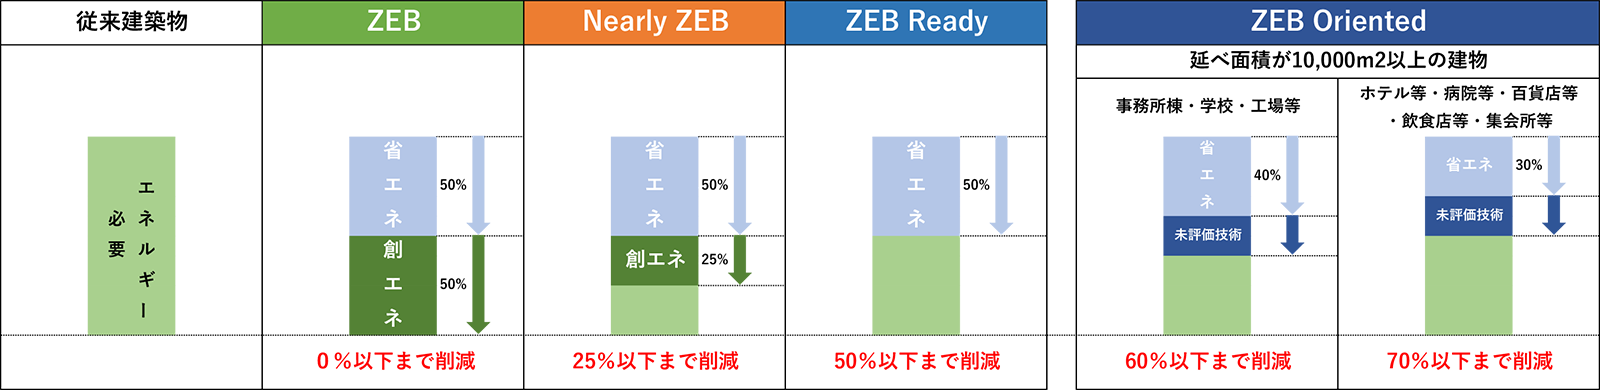 ZEB（ネット・ゼロ・エネルギー・ビル）ソリューション